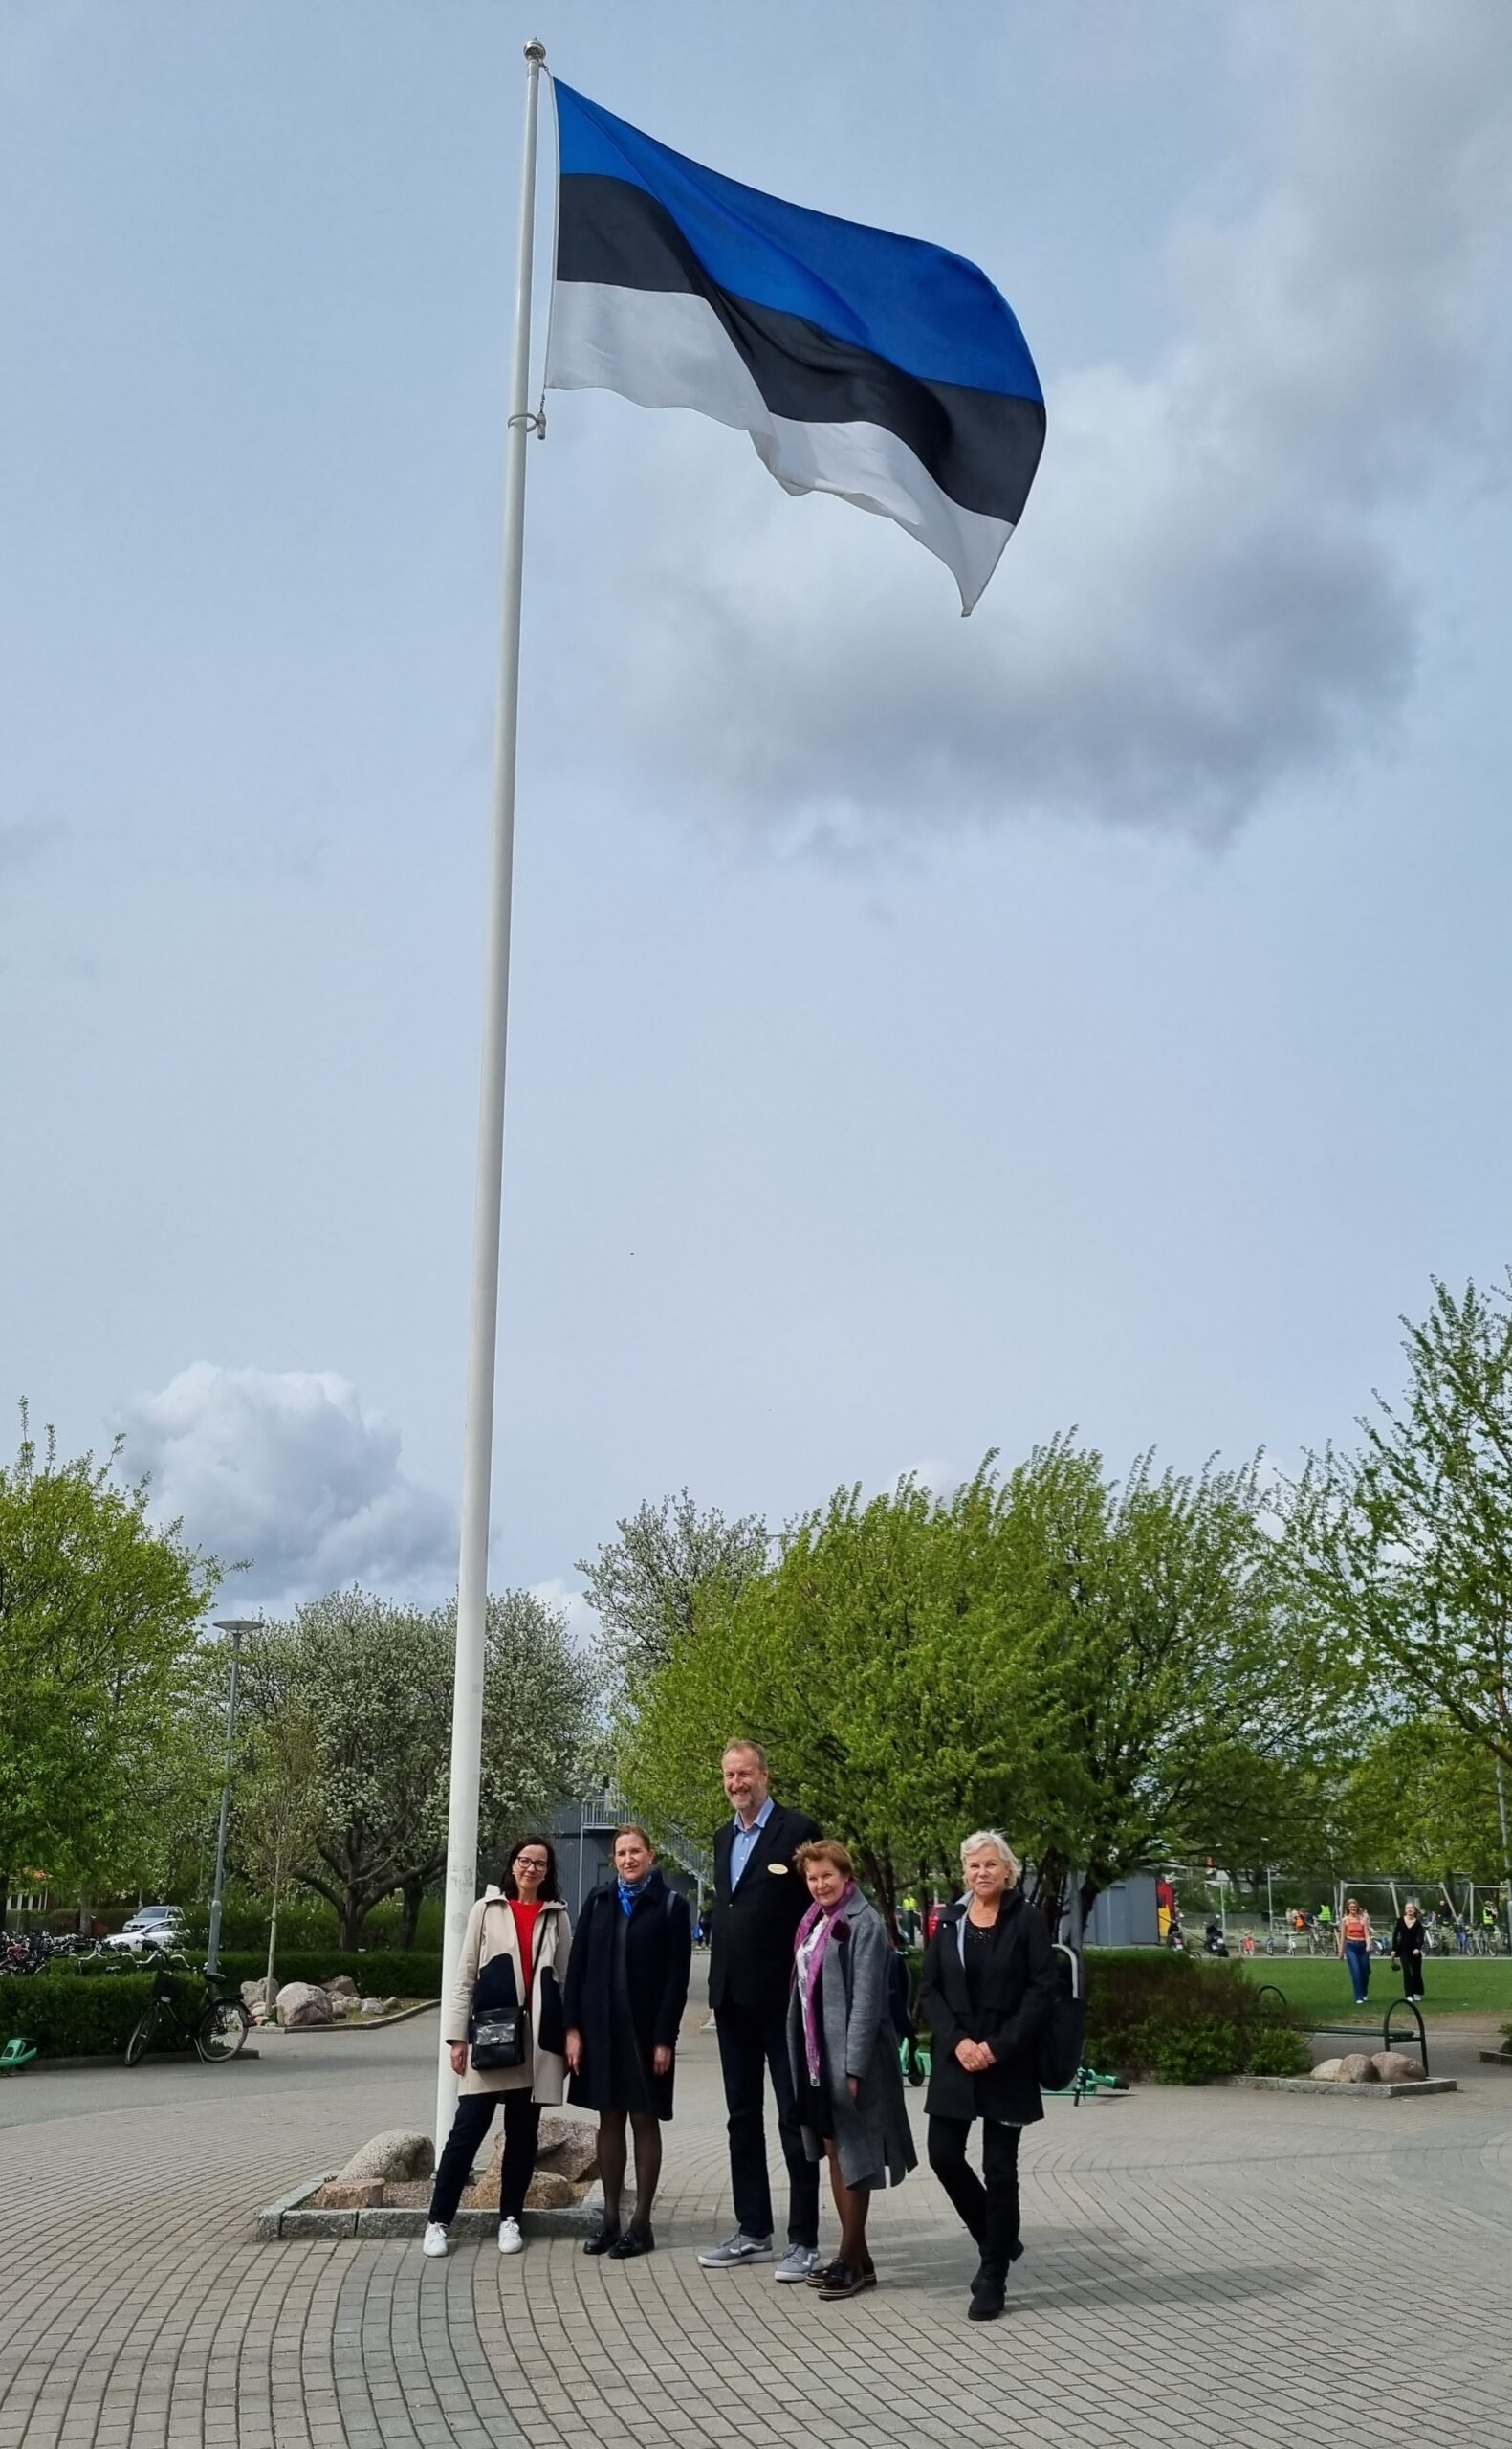 Haridus- ja teadusministeeriumi töötajad hoidsid Eesti lippu kõrgena ka kohtumisel Nannaskolani direktor Henrik Ljungblomiga. Foto: Maie Kitsing